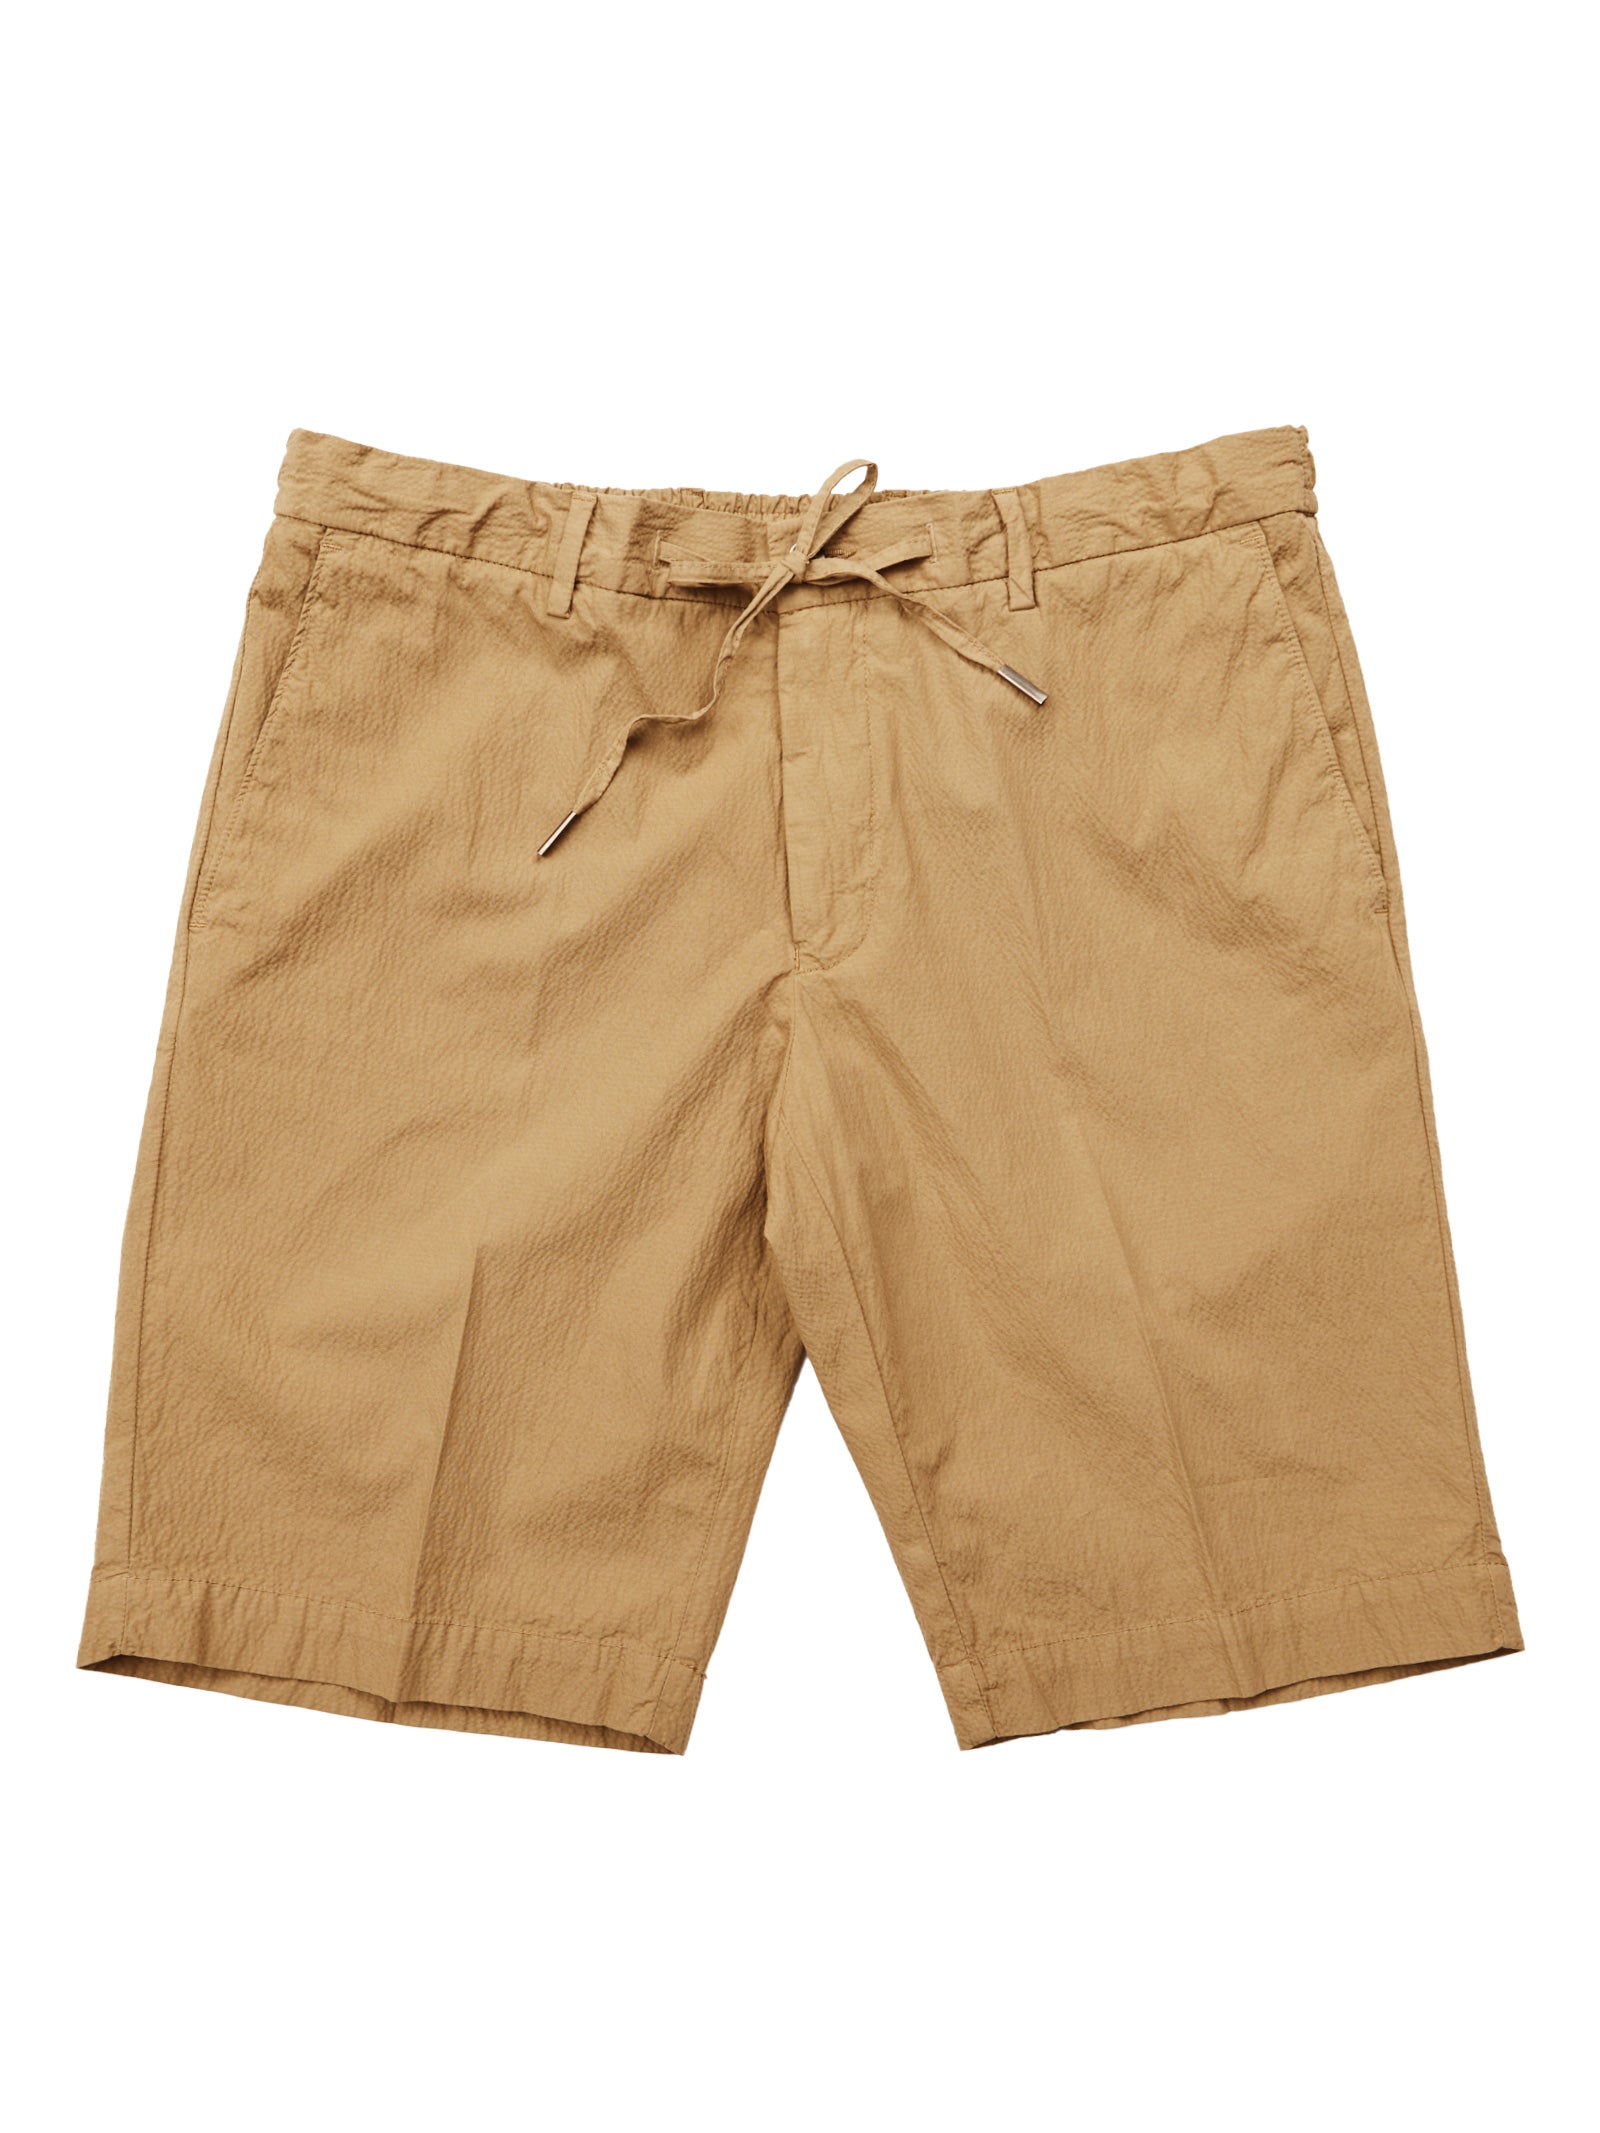 Acorn Brown Seersucker Stretch Shorts